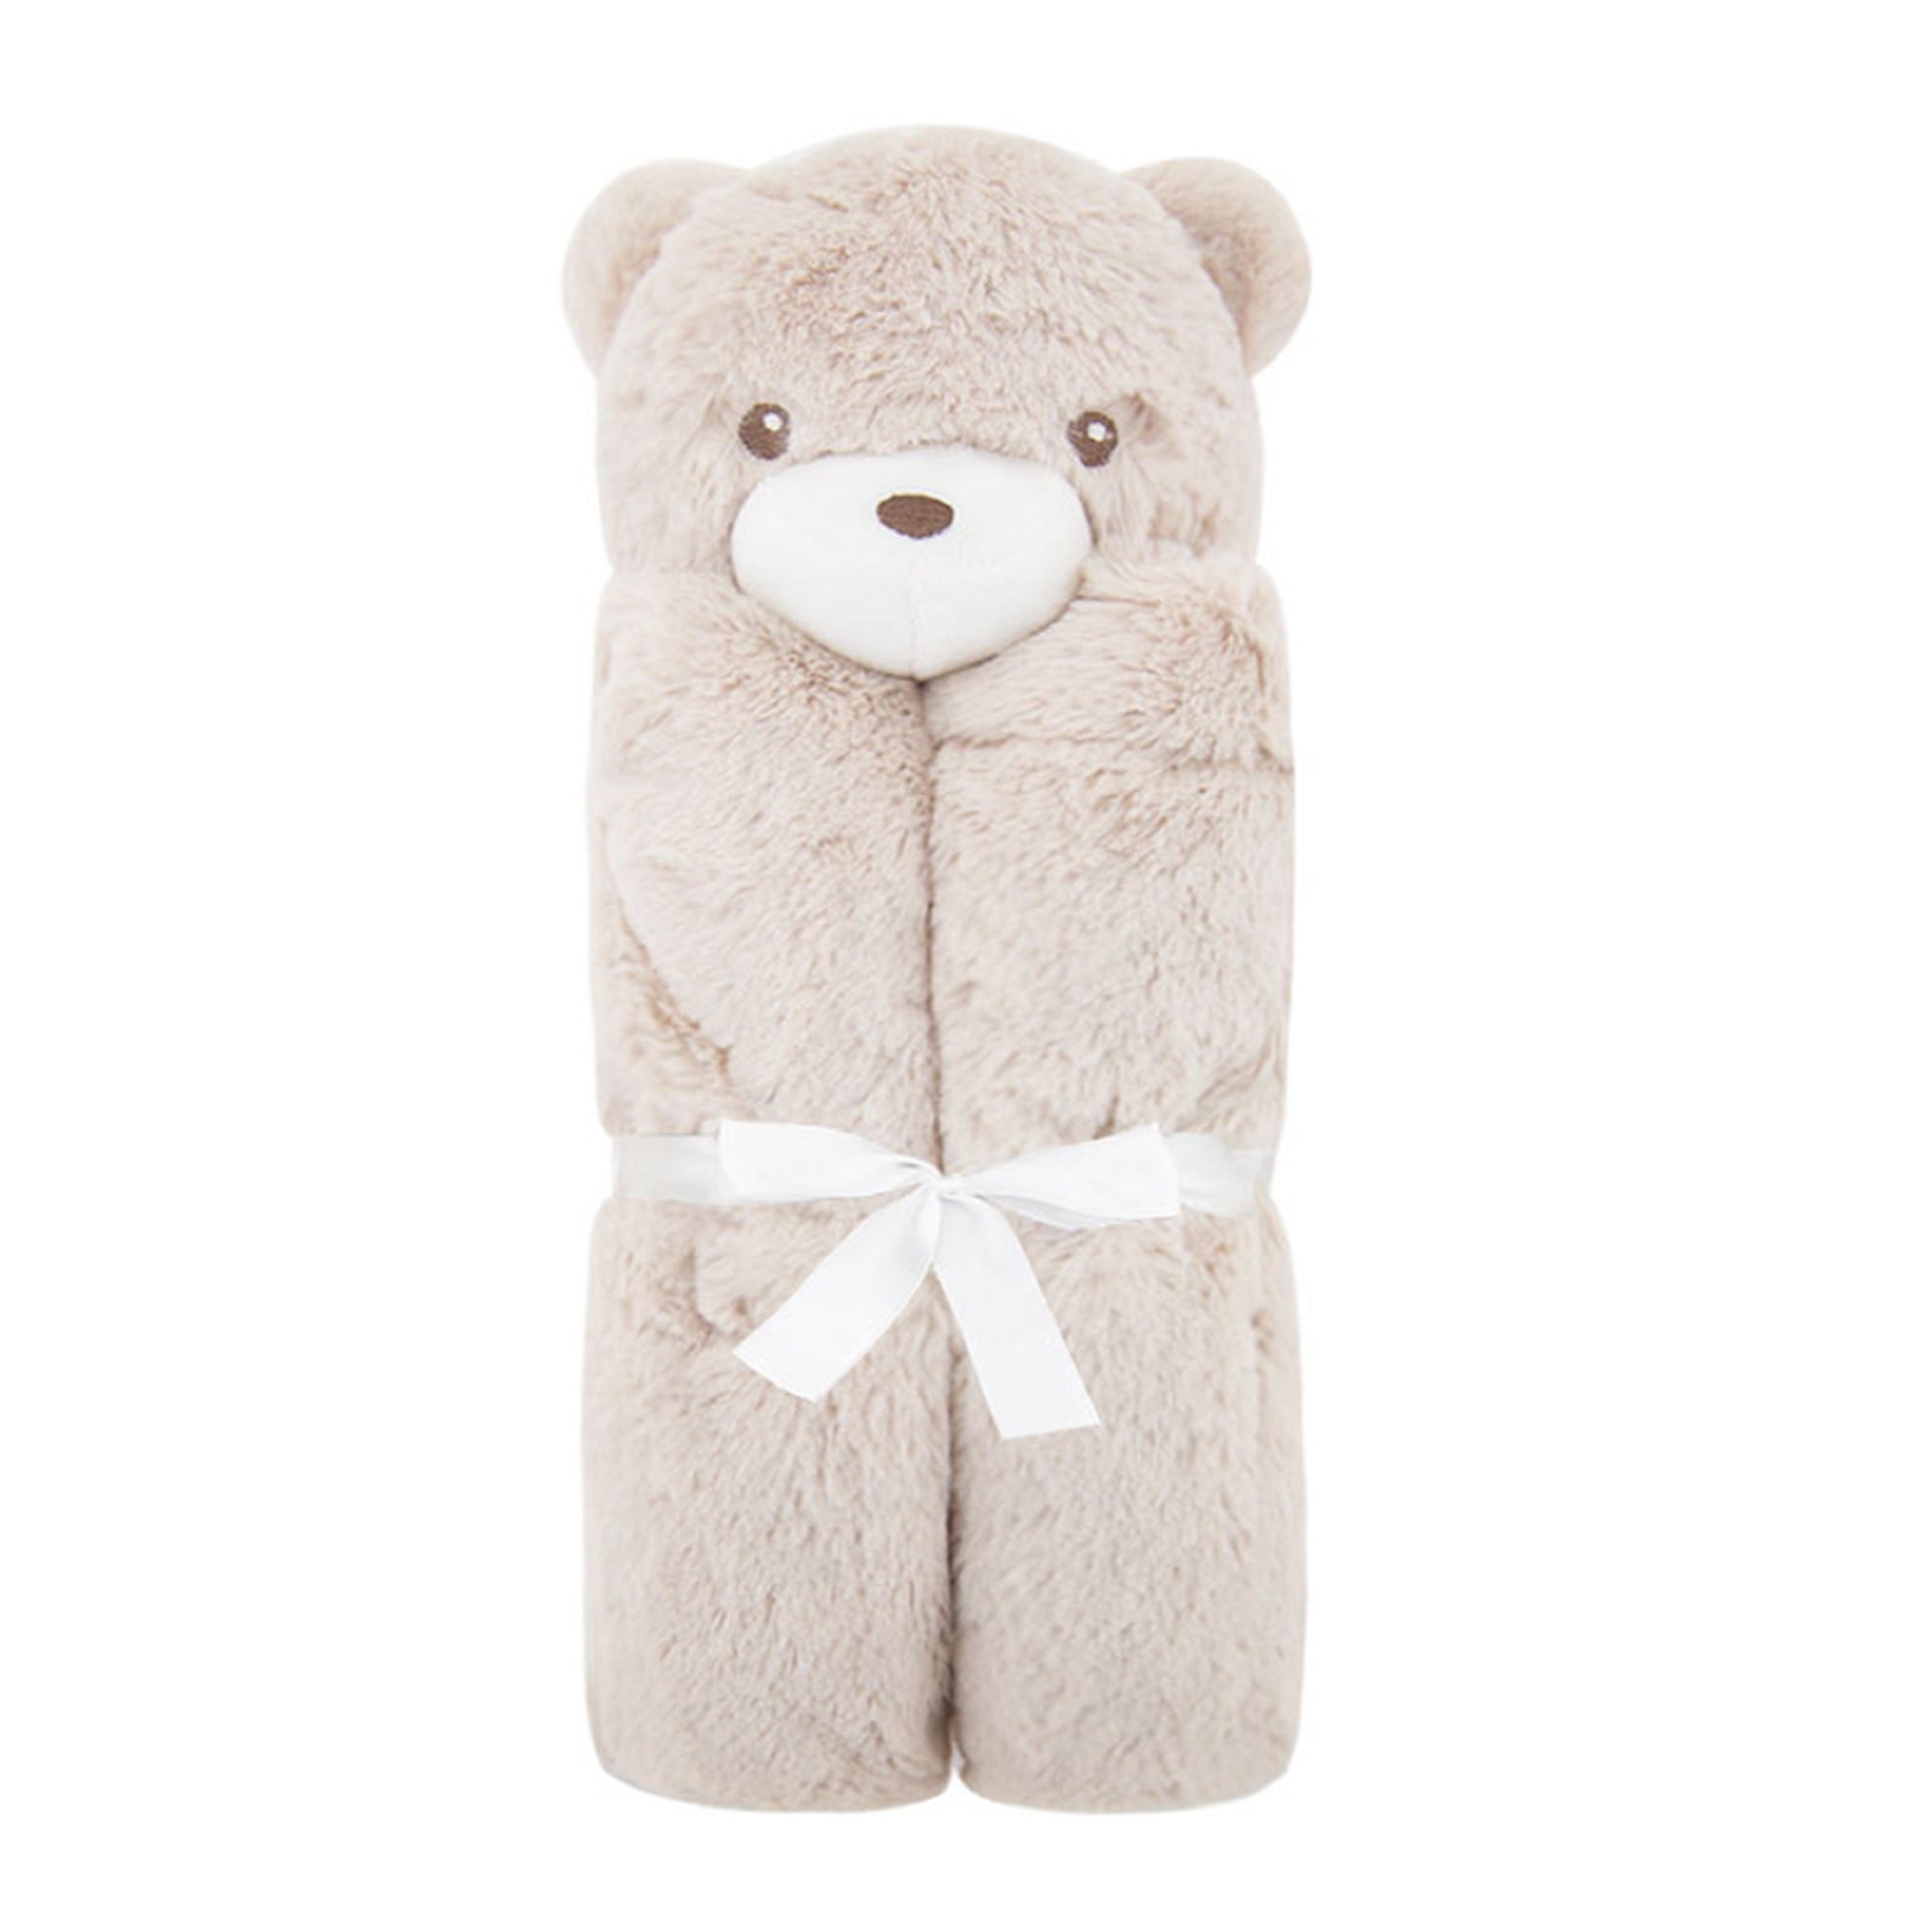 Soft Teddy Bear Blanket